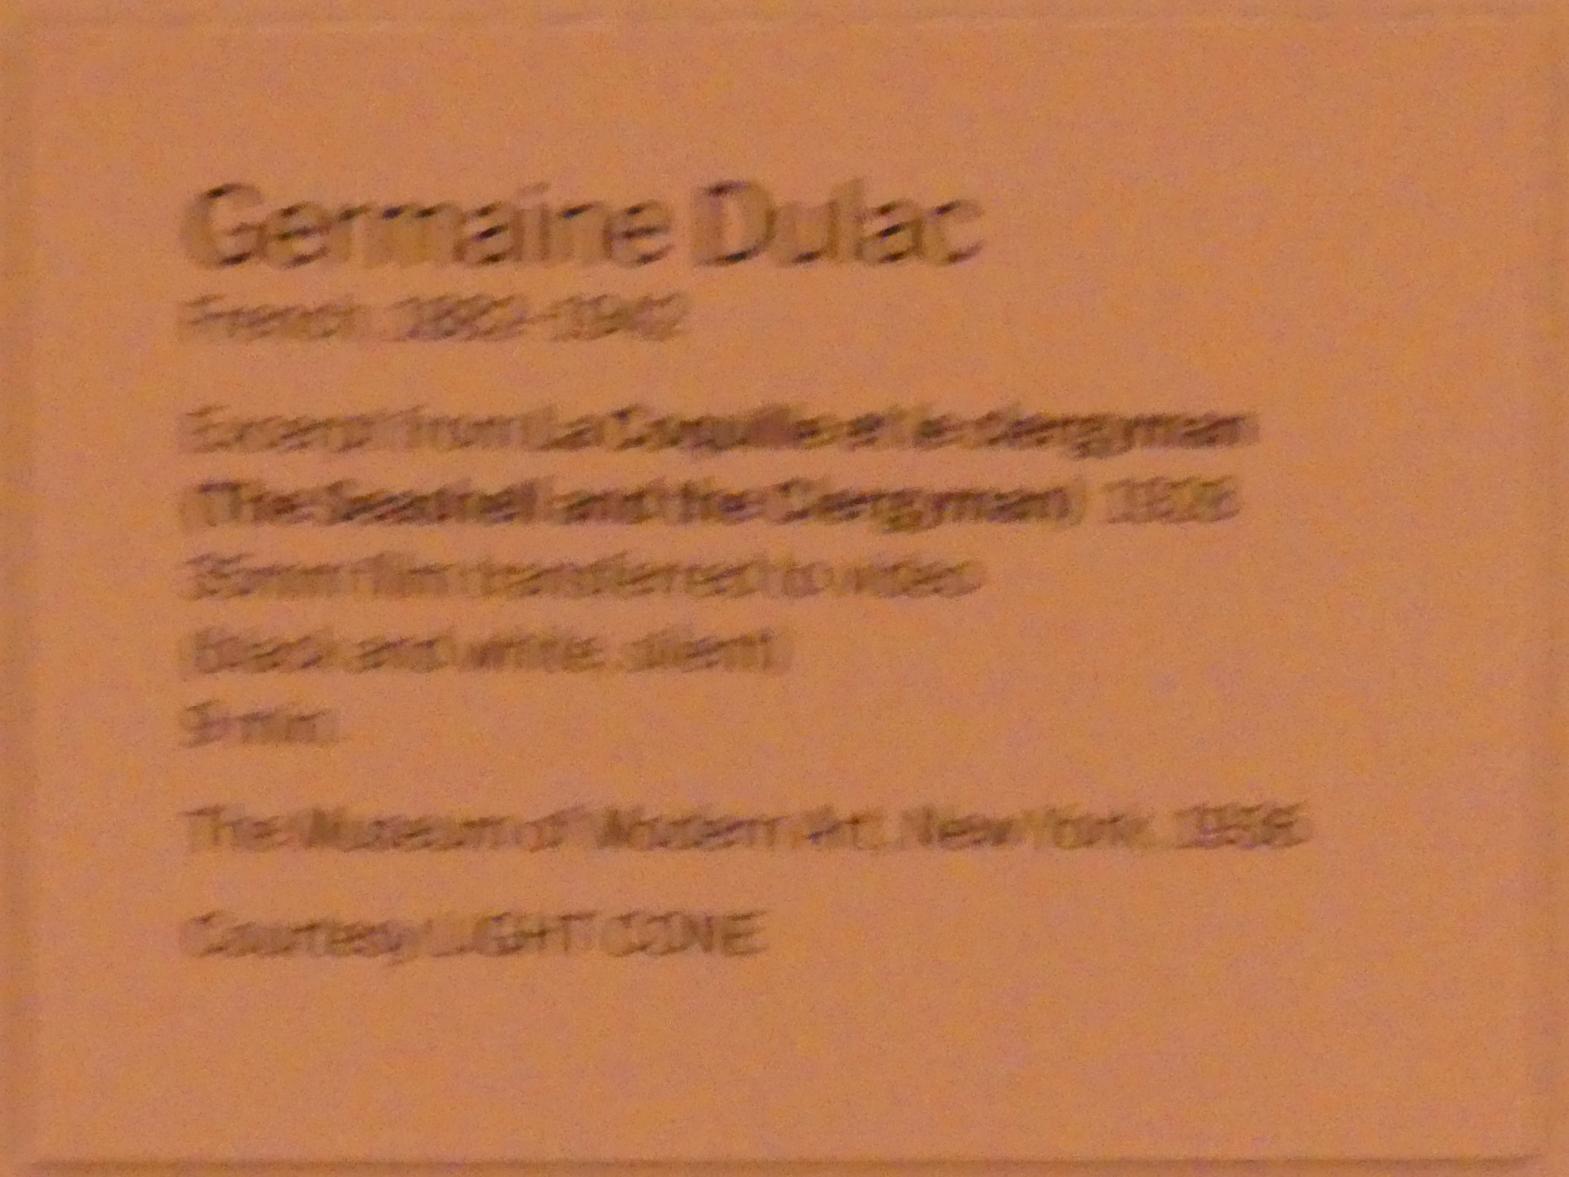 Germaine Dulac (1928), Die Muschel und der Geistliche, New York, Museum of Modern Art (MoMA), Saal 517, 1928, Bild 2/2